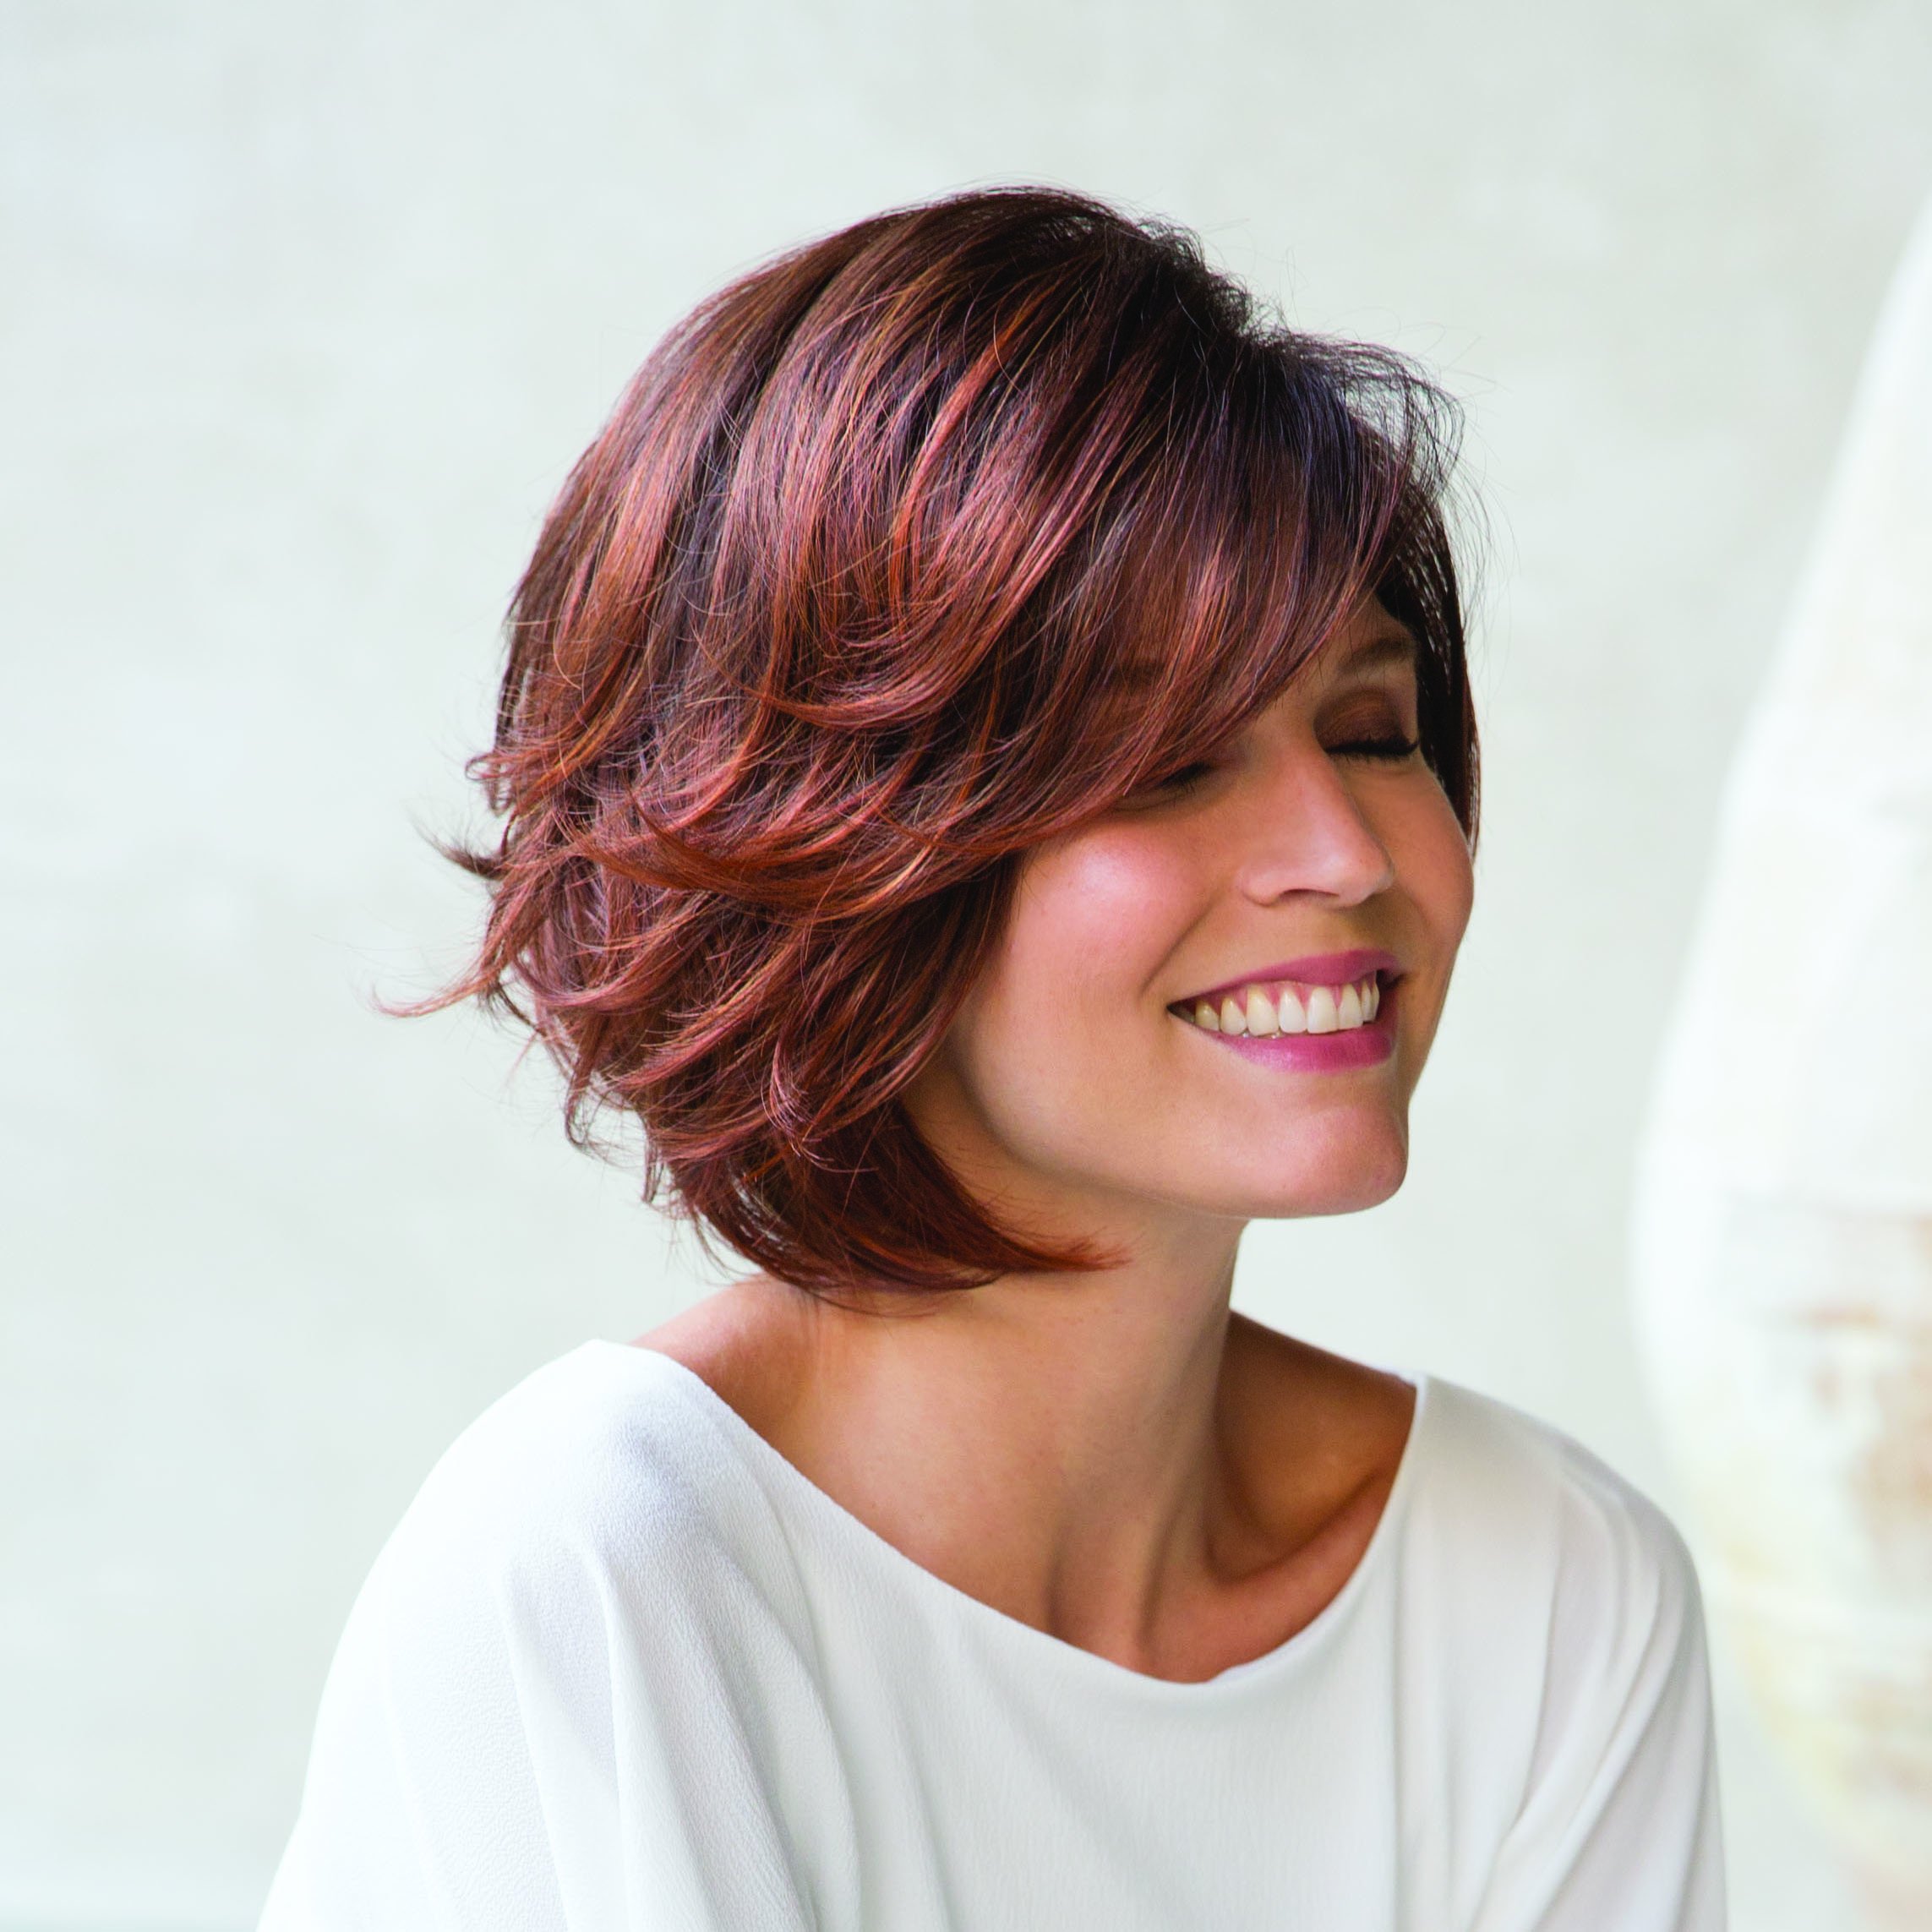 Стрижка дебют на средние волосы фото с челкой для женщин после 40